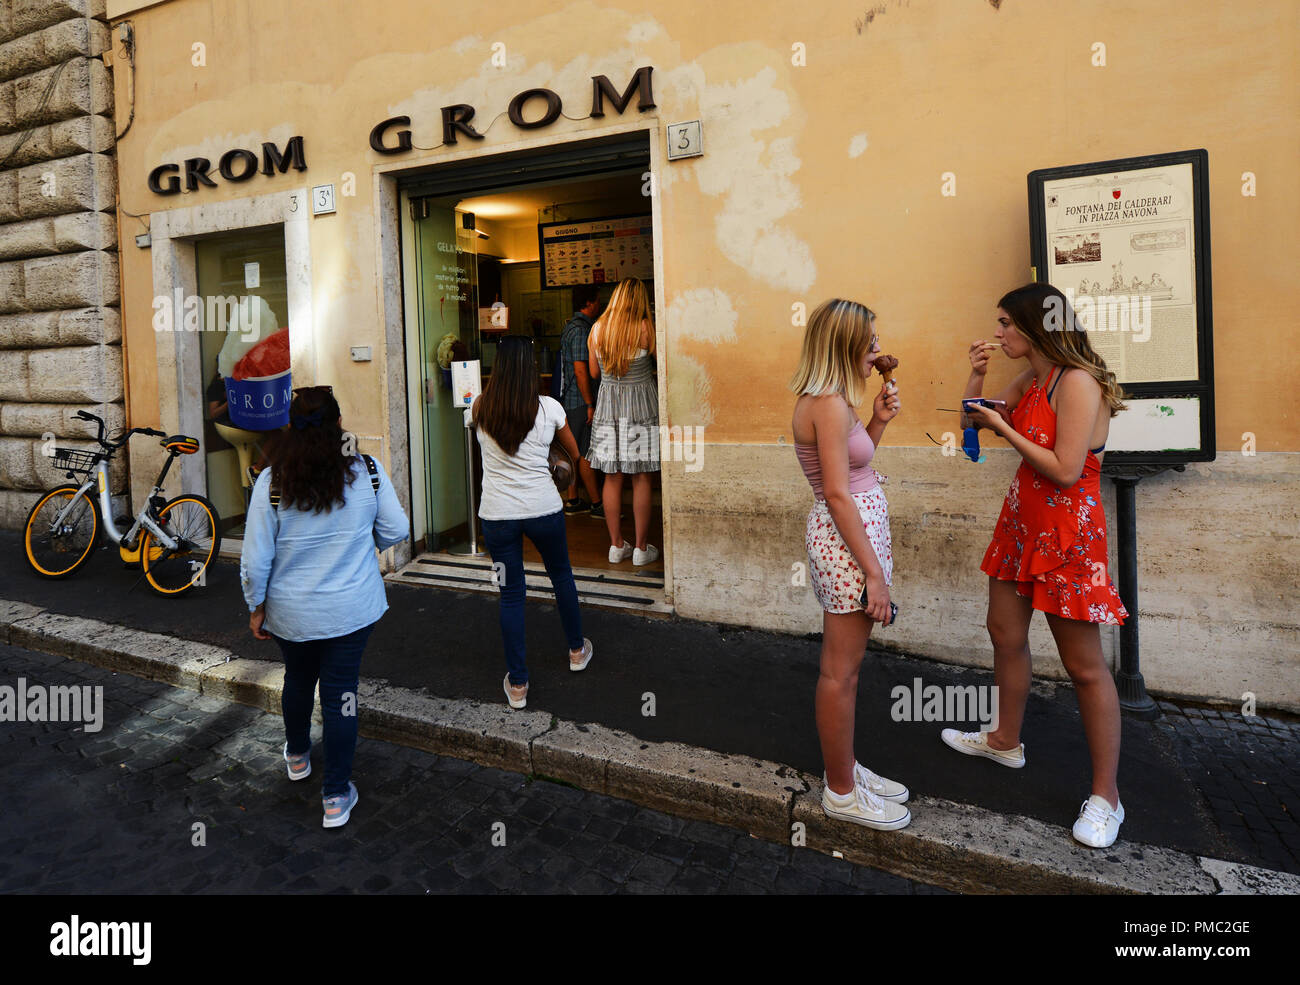 Grom ice cream in Rome, Italy. Stock Photo